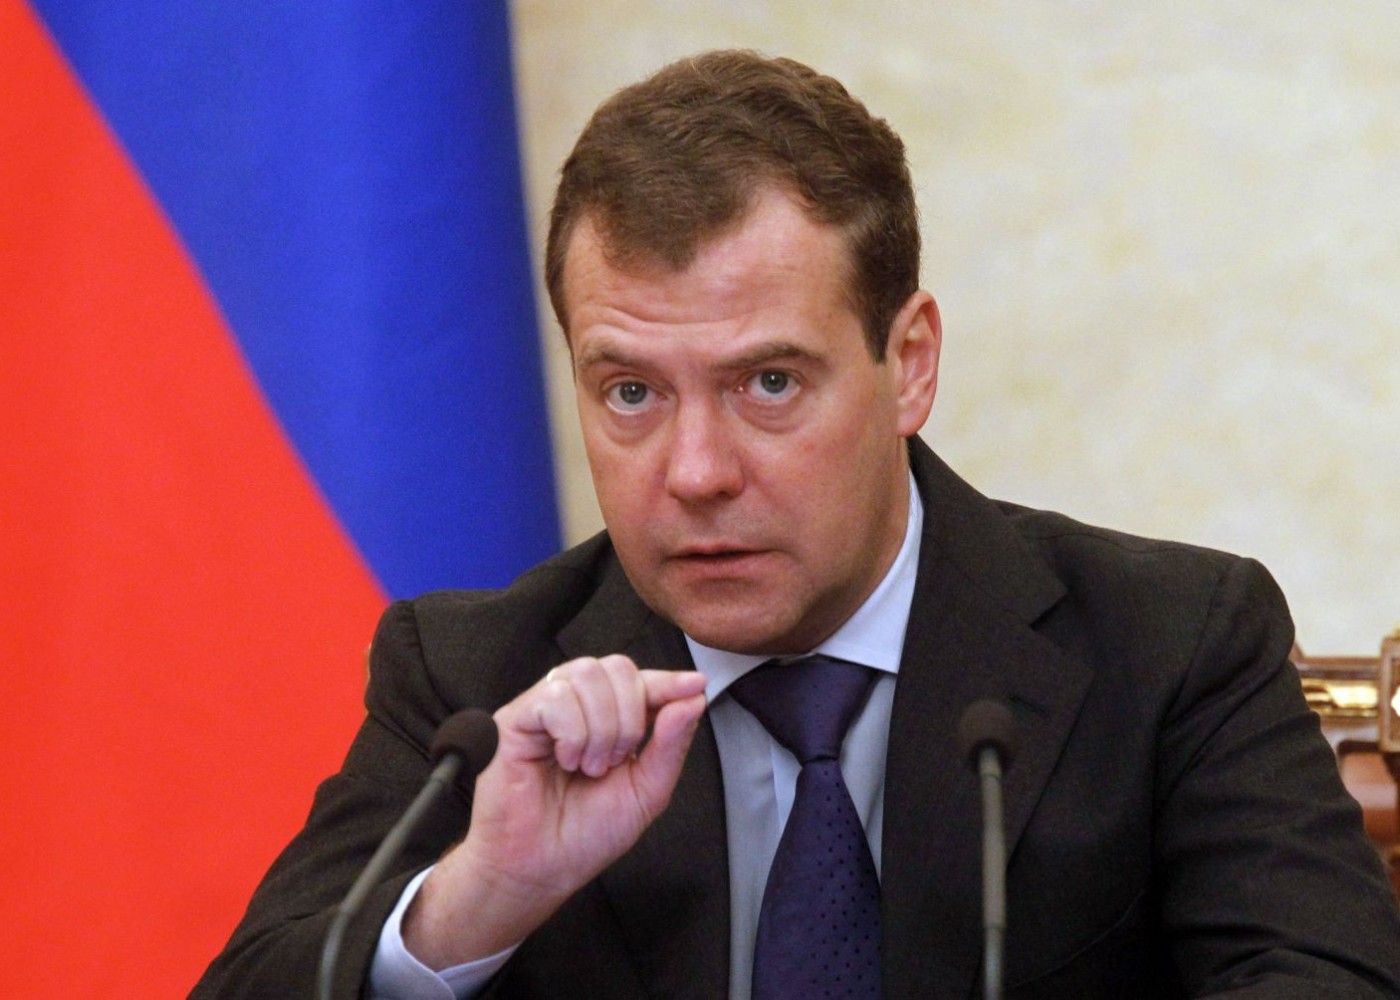 "Bu halda Vaşinqton, London və Parisə nüvə zərbəsi endiriləcək" - Medvedev